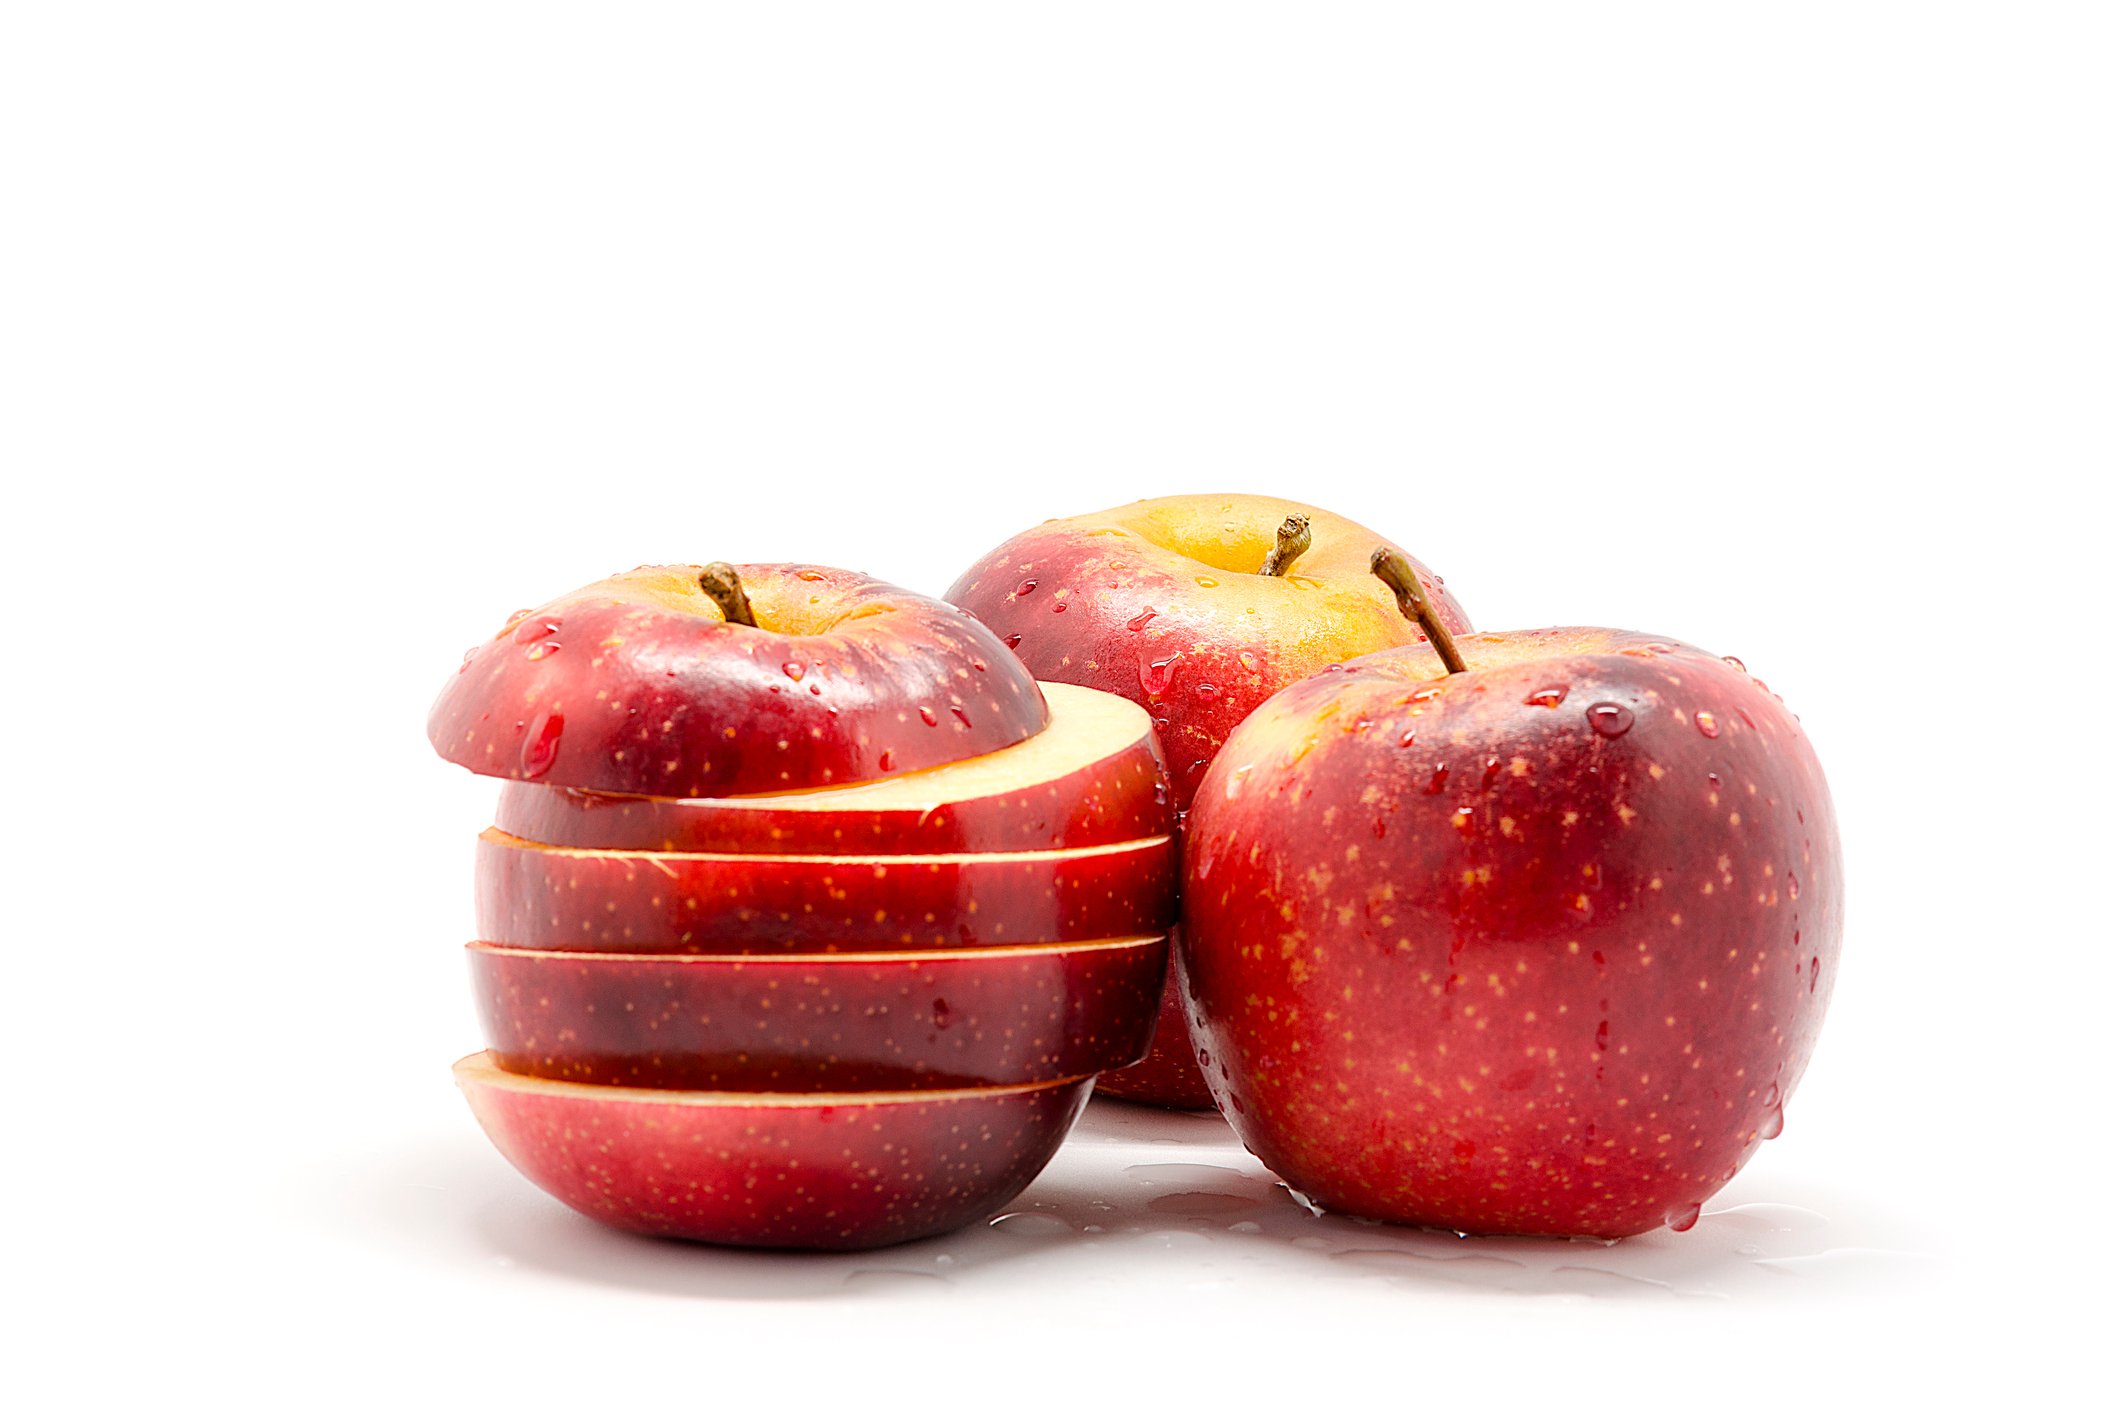 Äpfel sind gesund und enthalten viele wichtige Vitamine und Mineralstoffe.